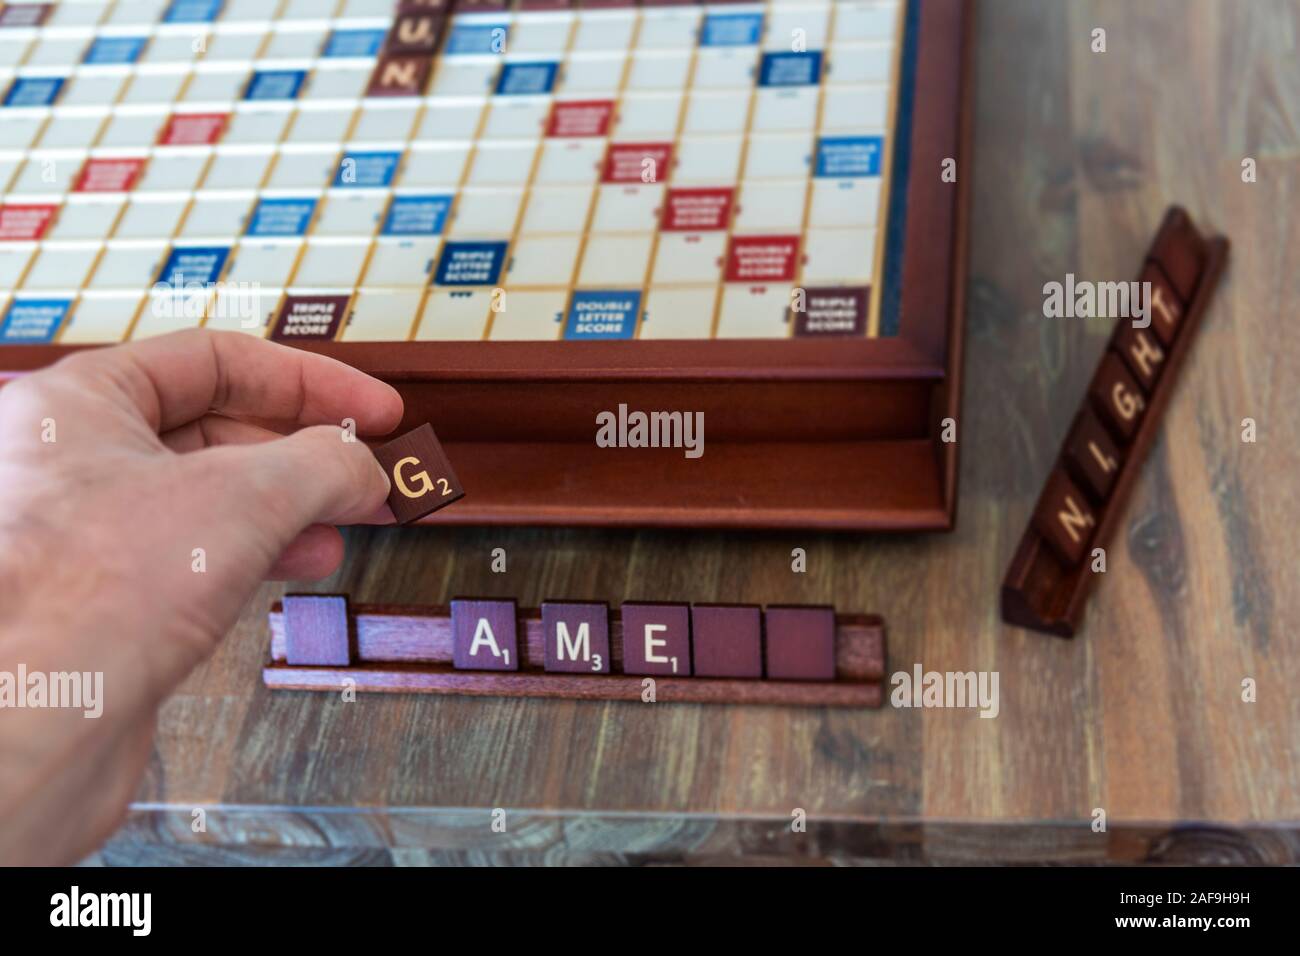 Sicht hand mit buchstabensteine beim Spielen ein Brettspiel Stockfotografie  - Alamy